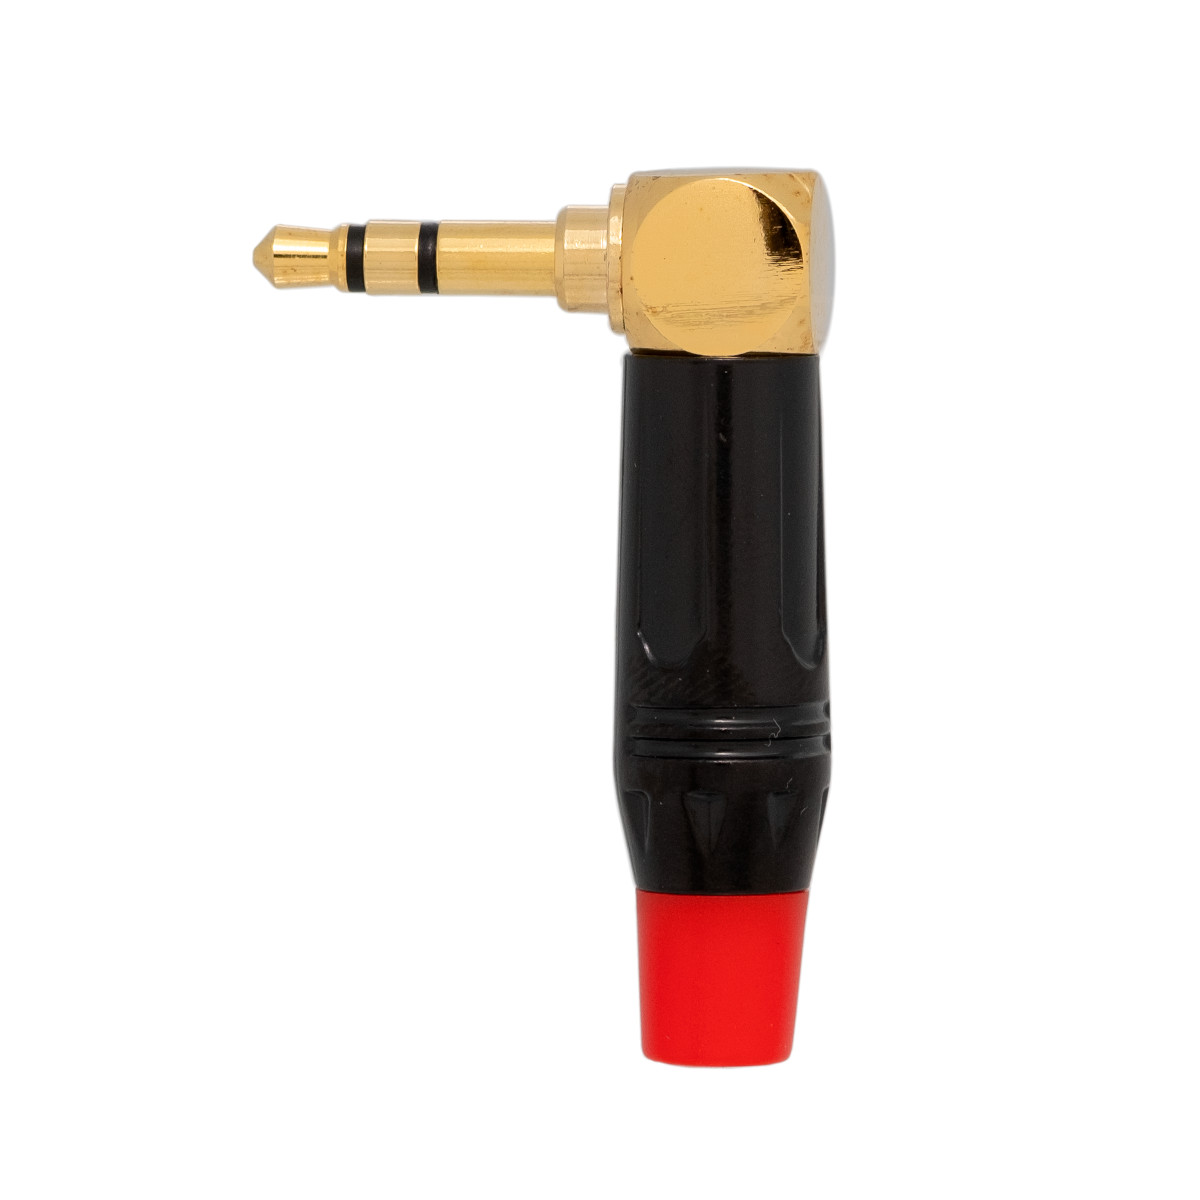 Conector Jack 3.5mm 3cont. dorado acodado  - manguito rojo